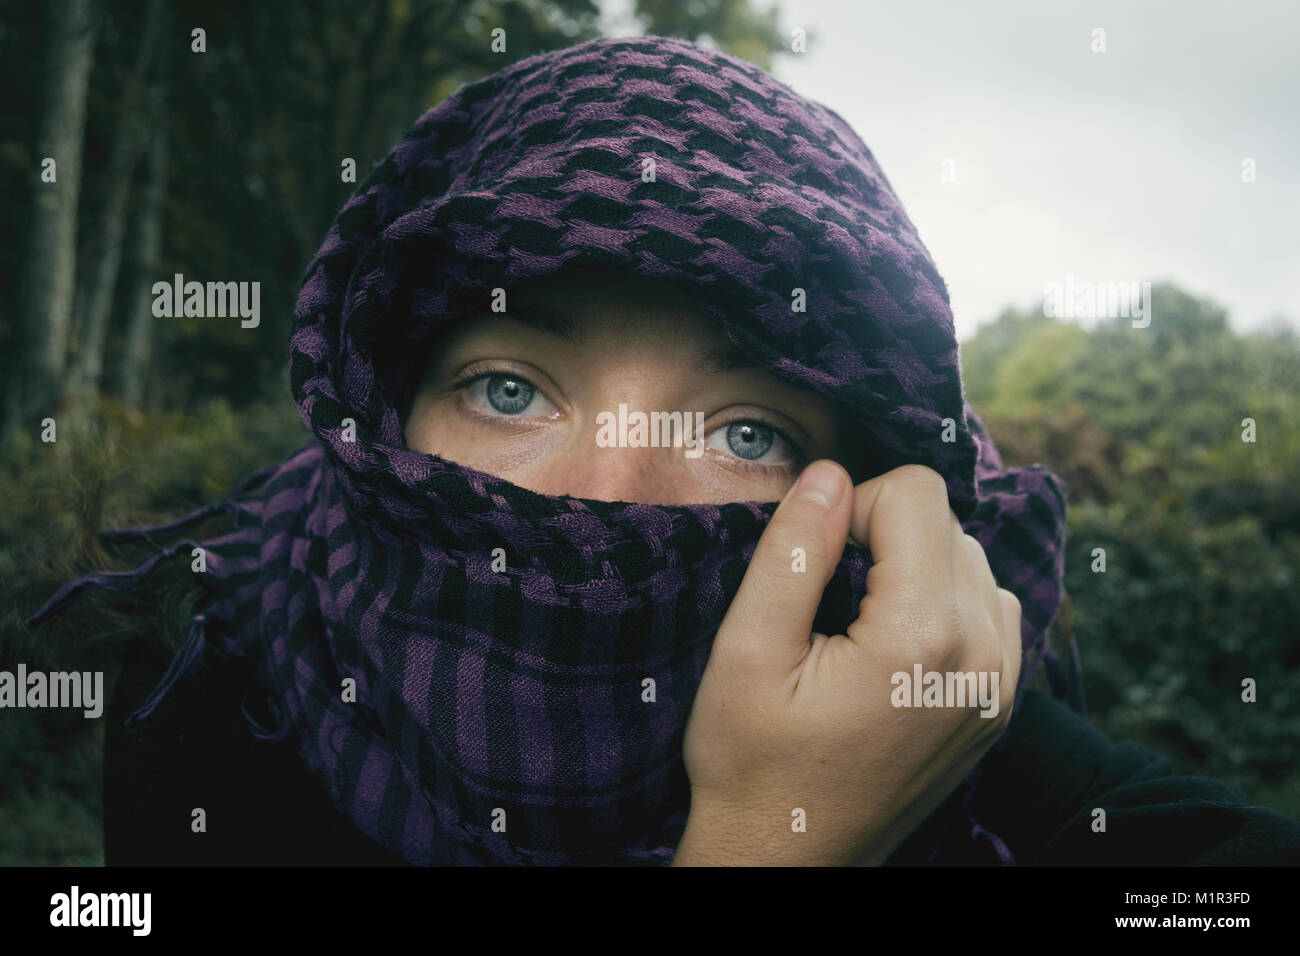 Chica de ojos azules mirando a camara tapandose la cabeza y parte de la cara con onu aguantado pañuelo por su mano en la naturaleza. Foto Stock